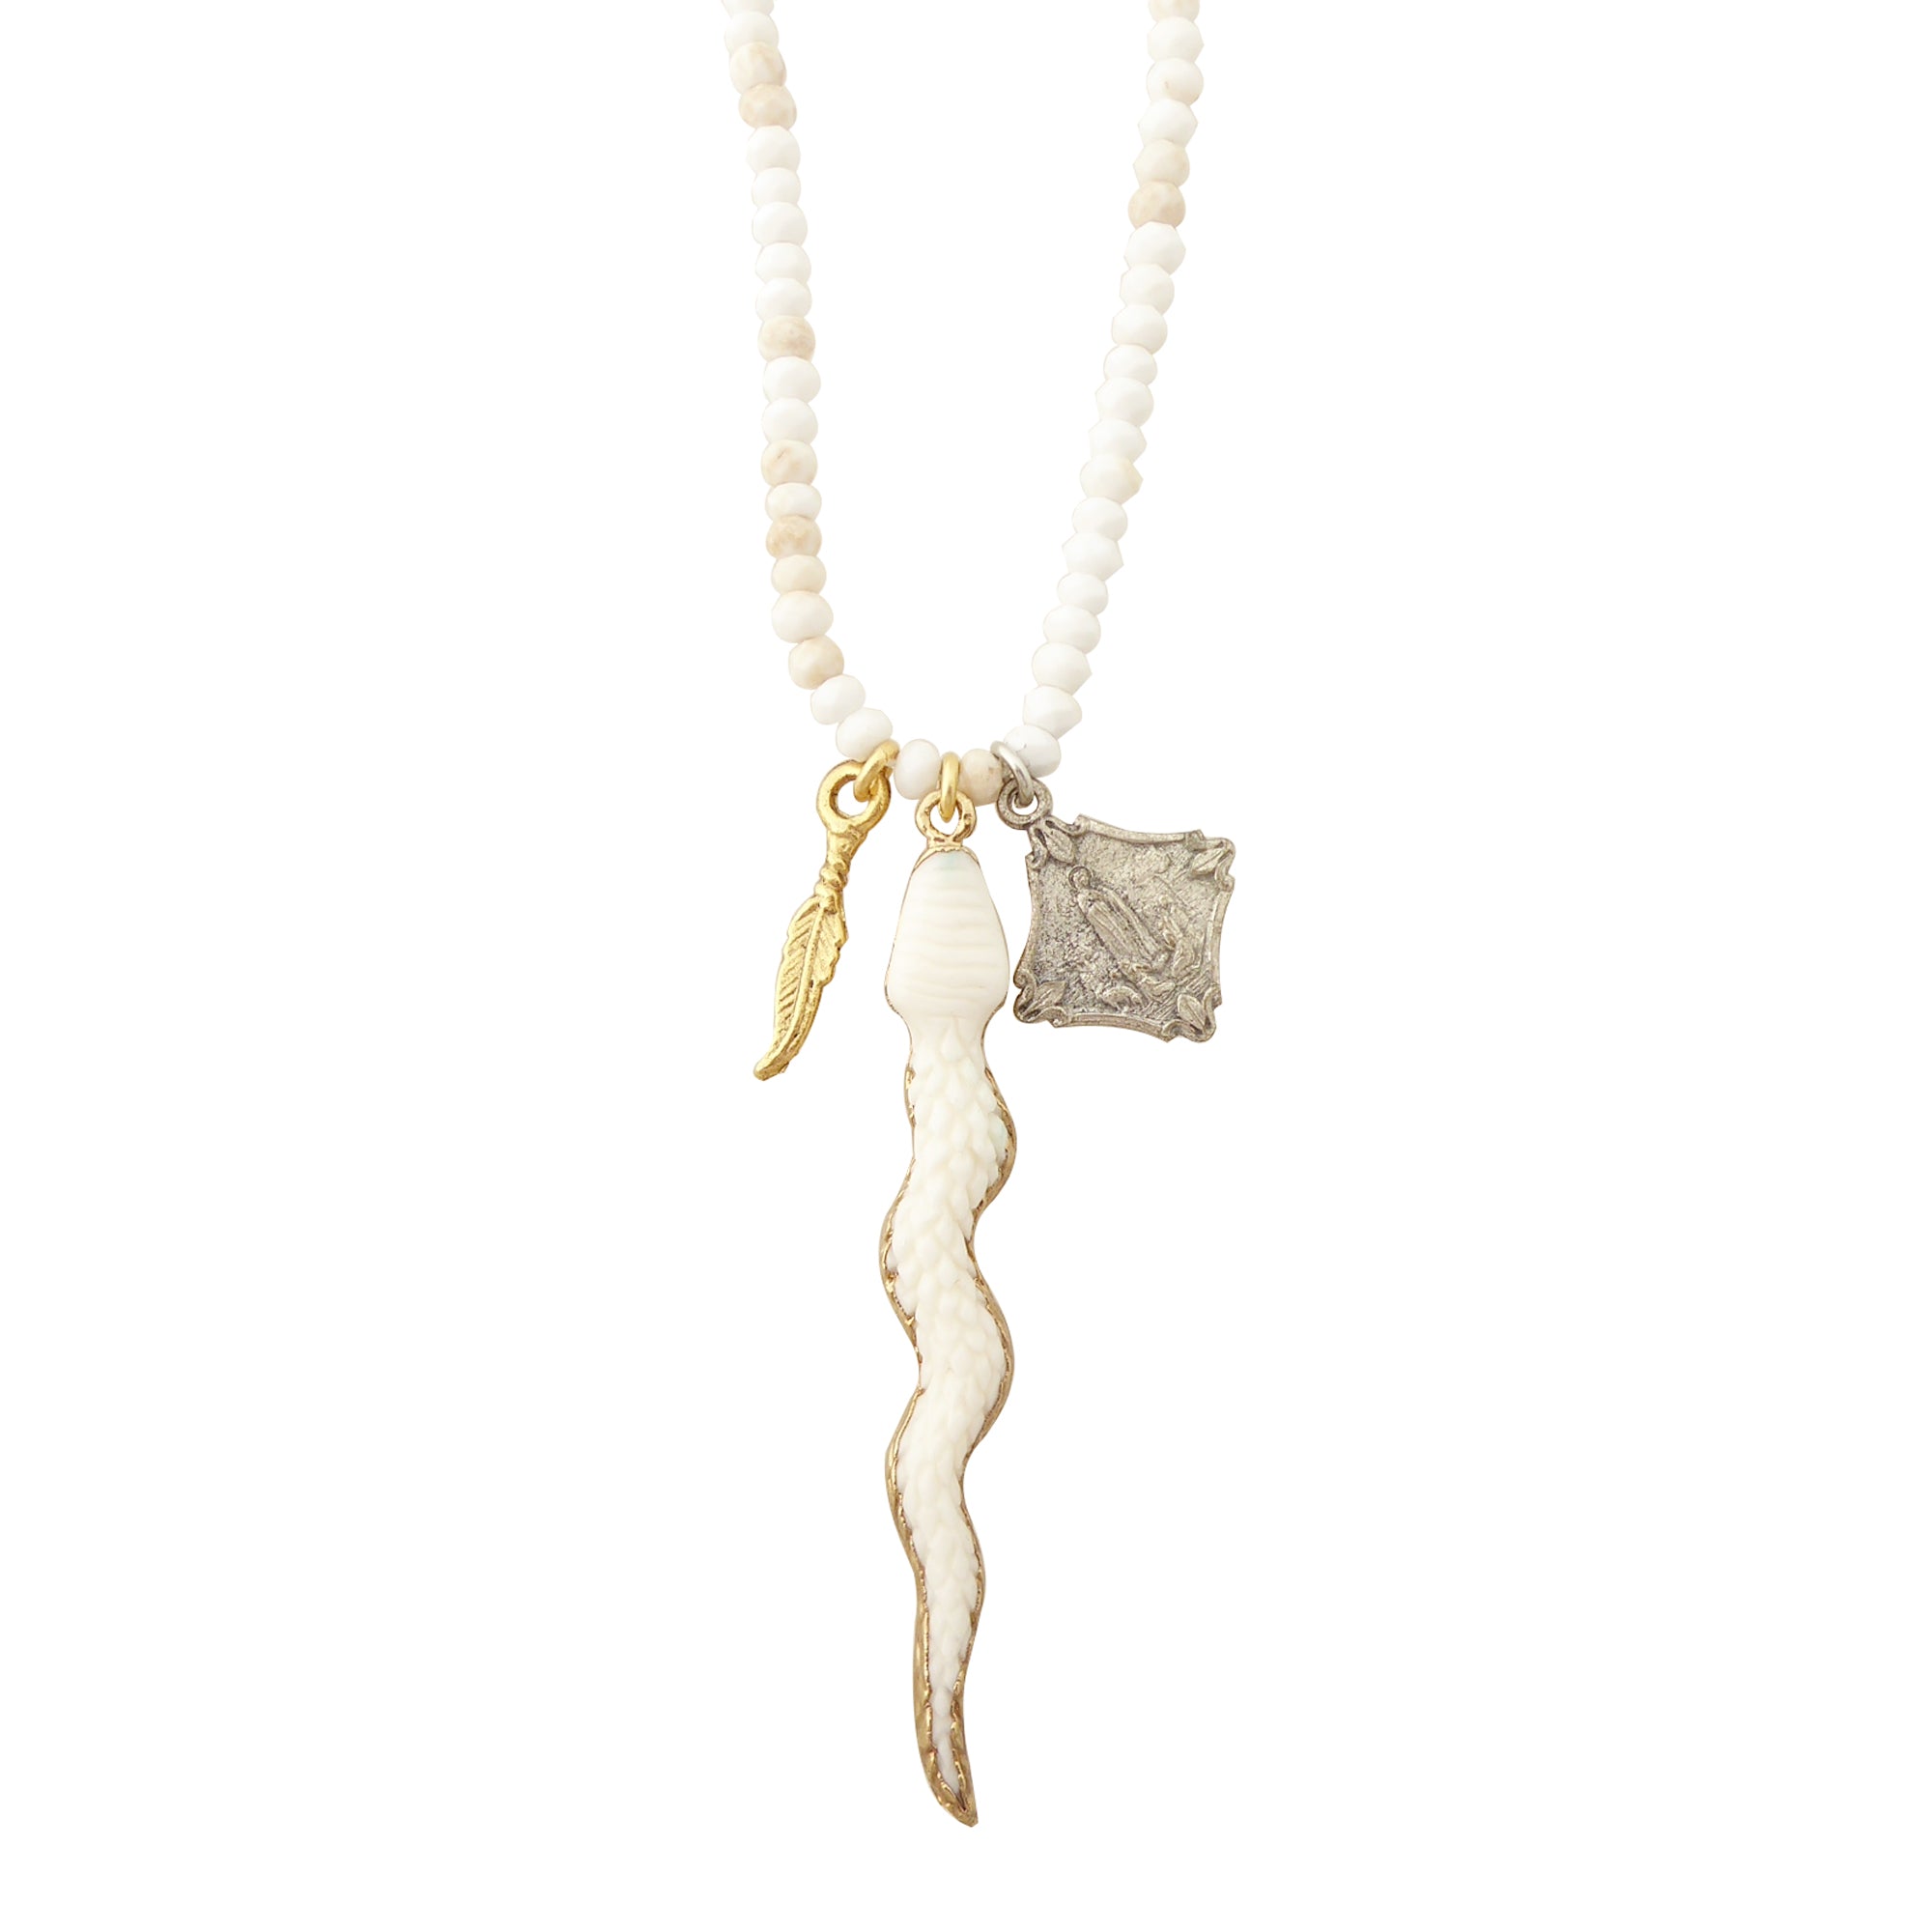 Carved snake pendant necklace by Jenny Dayco 1